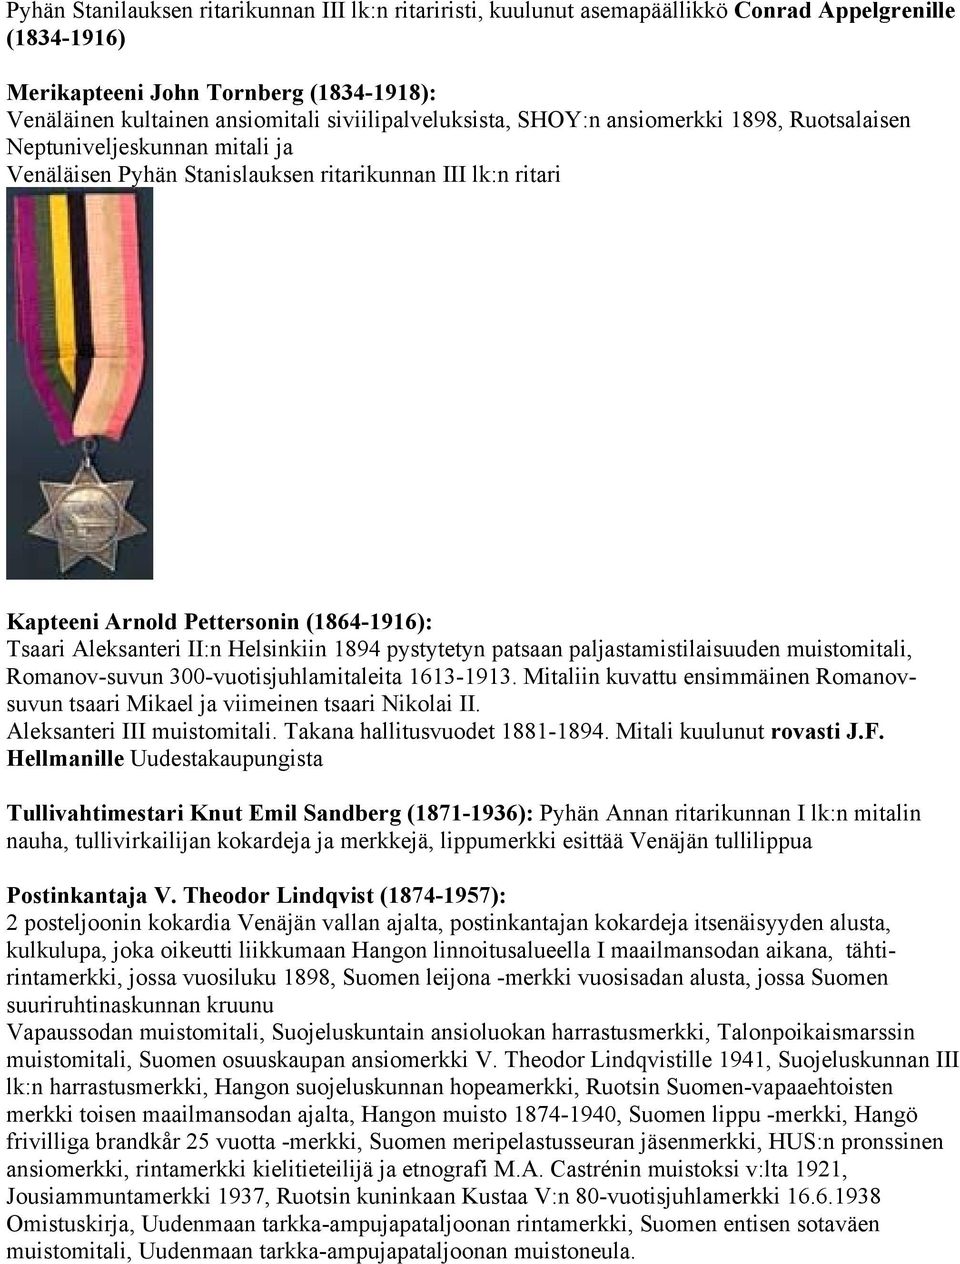 Aleksanteri II:n Helsinkiin 1894 pystytetyn patsaan paljastamistilaisuuden muistomitali, Romanov-suvun 300-vuotisjuhlamitaleita 1613-1913.